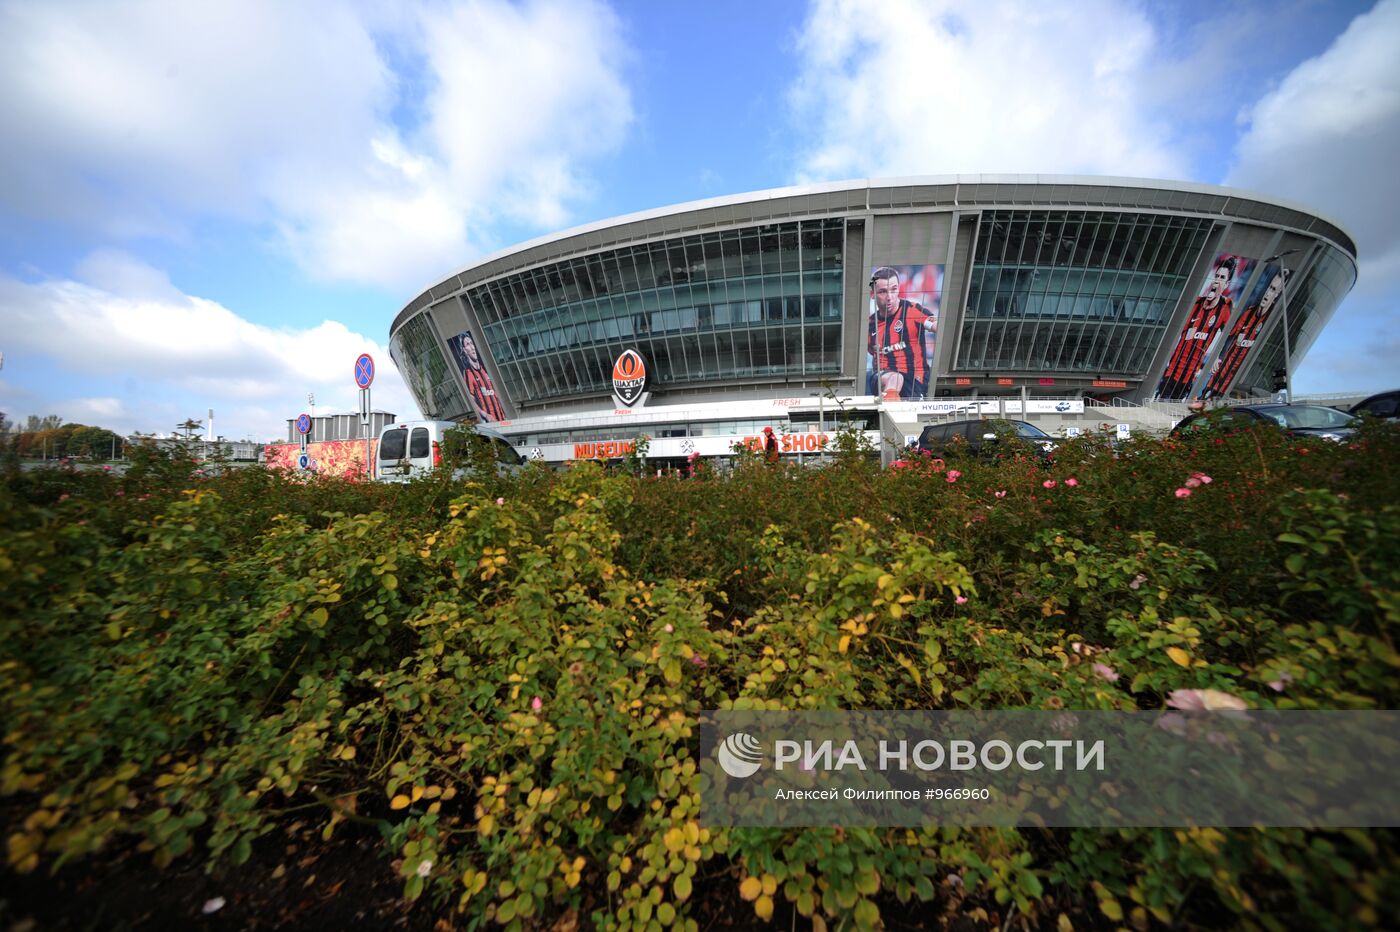 Здание стадиона "Донбасс Арена" в Донецке